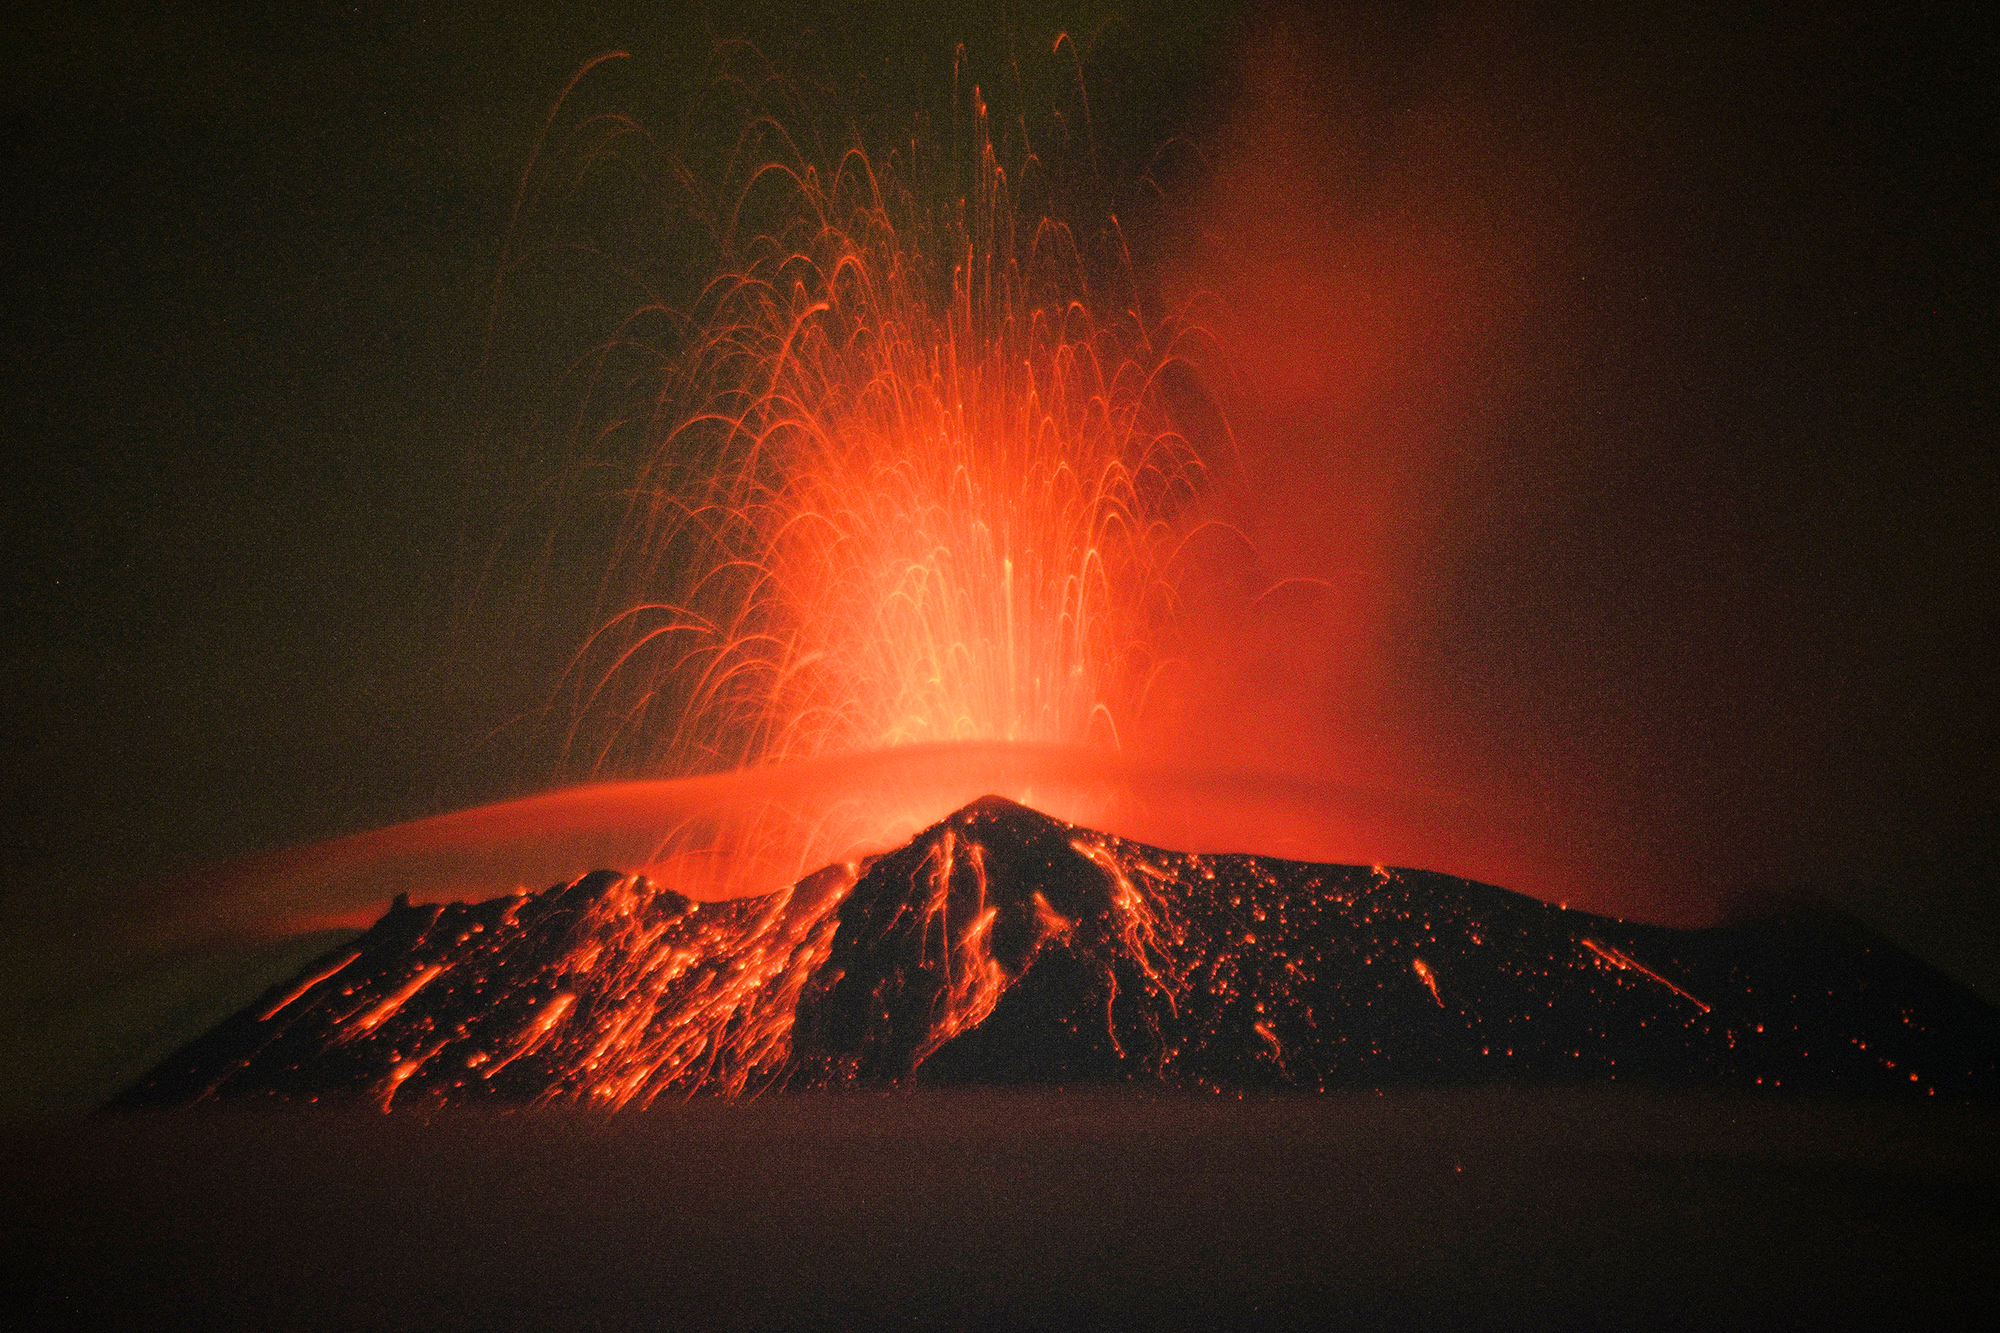 Der Vulkan Popocatépetl in San Nicolas de los Ranchos im mexikanischen Bundesstaat Puebla spuckt Feuer und Asche (Bild: Osvaldo Cantero/AFP)